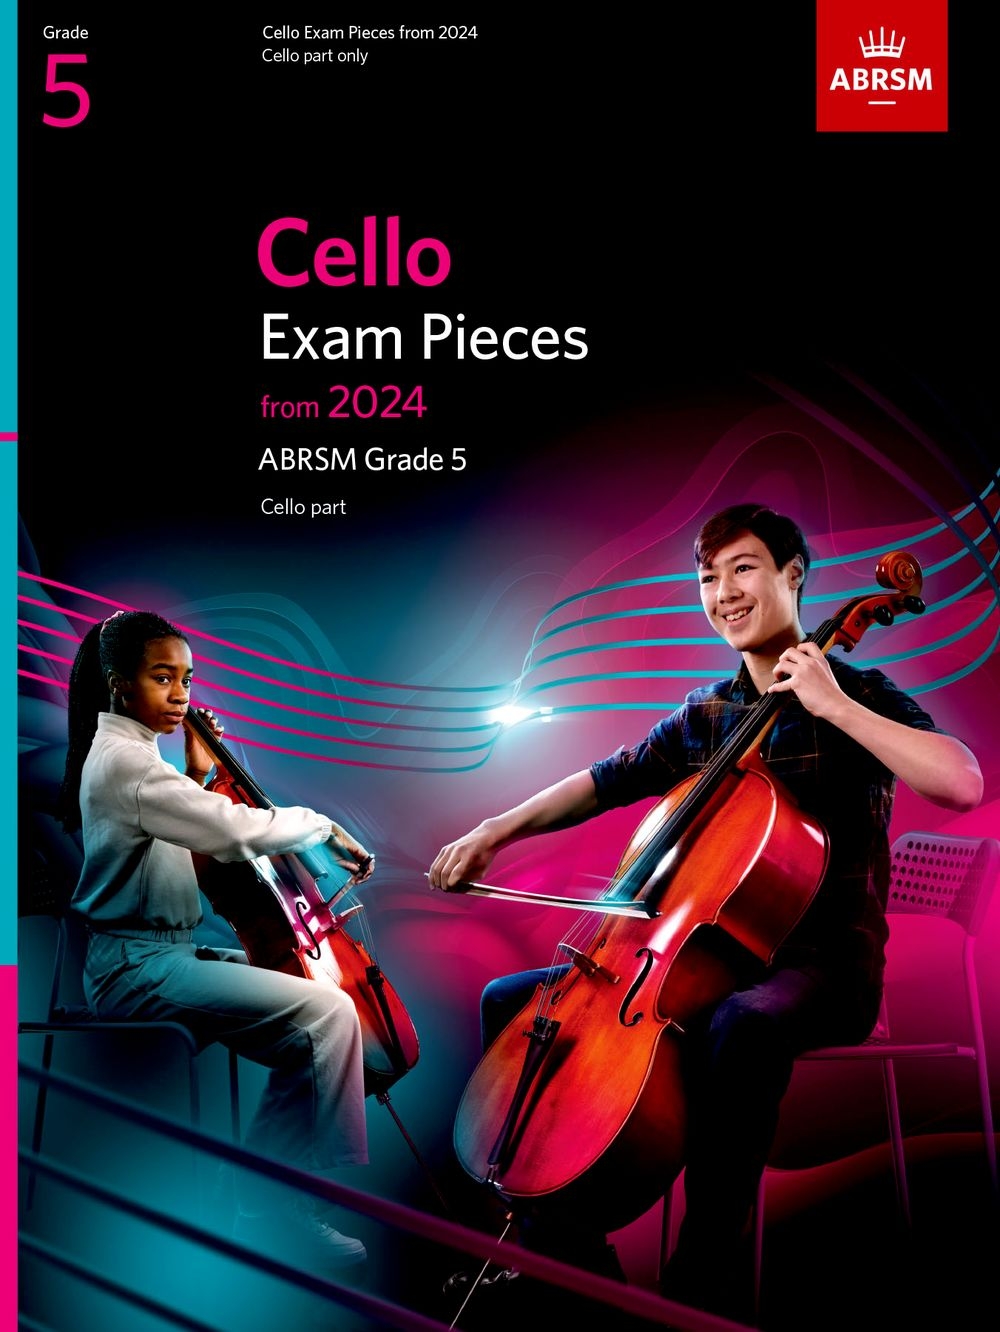 Cello Exam Pieces from 2024, ABRSM Grade 5